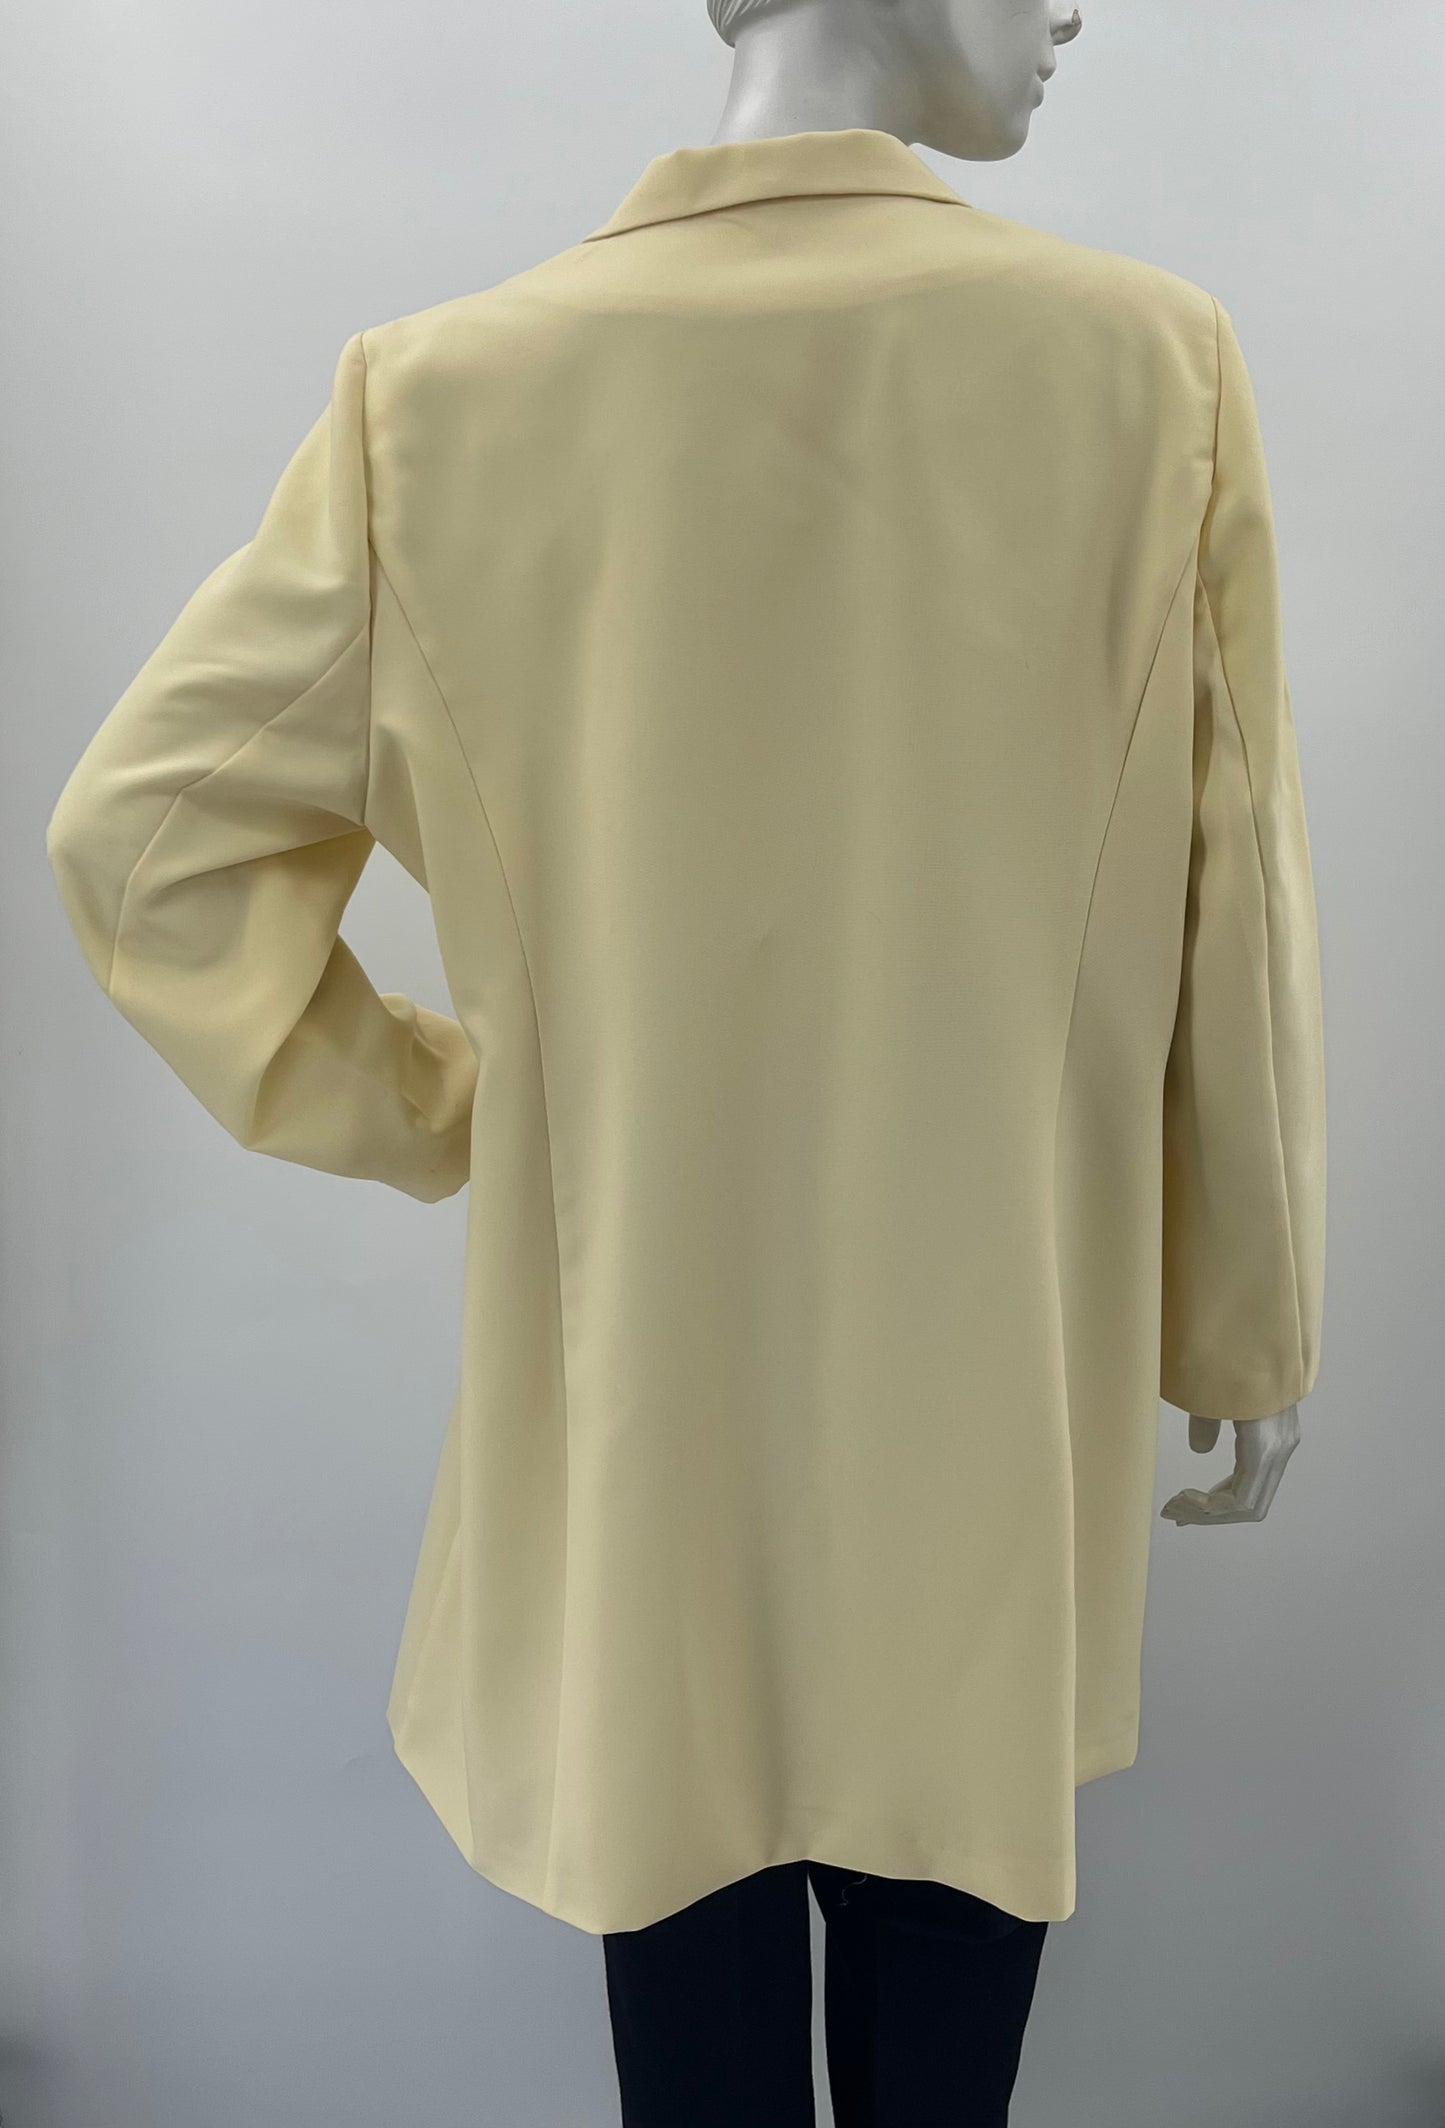 Vaaleankeltainen jakku, 90-luku, koko 42-44